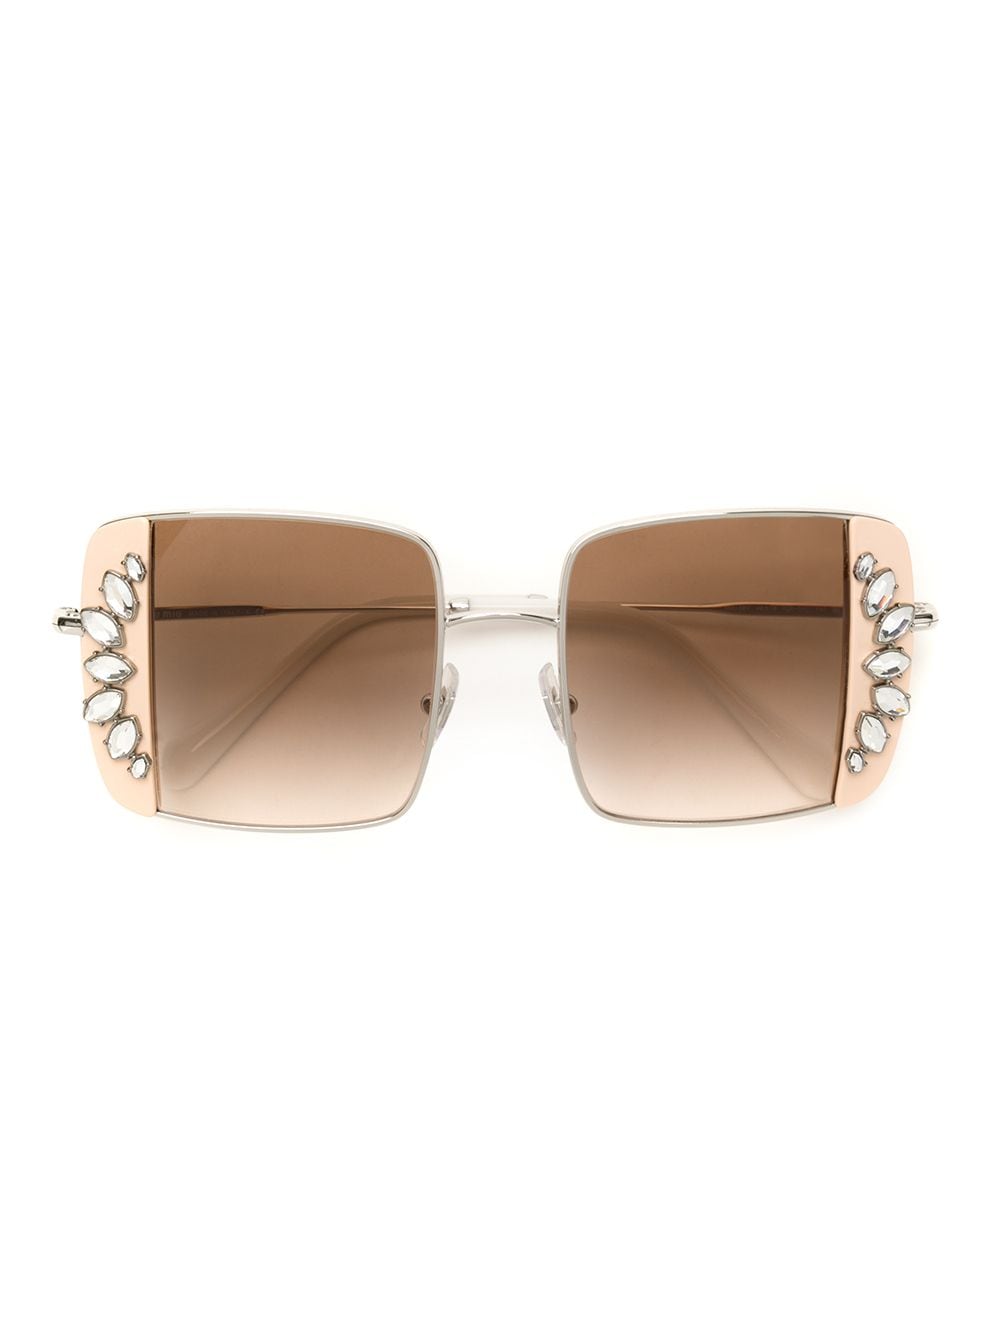 фото Miu miu eyewear солнцезащитные очки с кристаллами